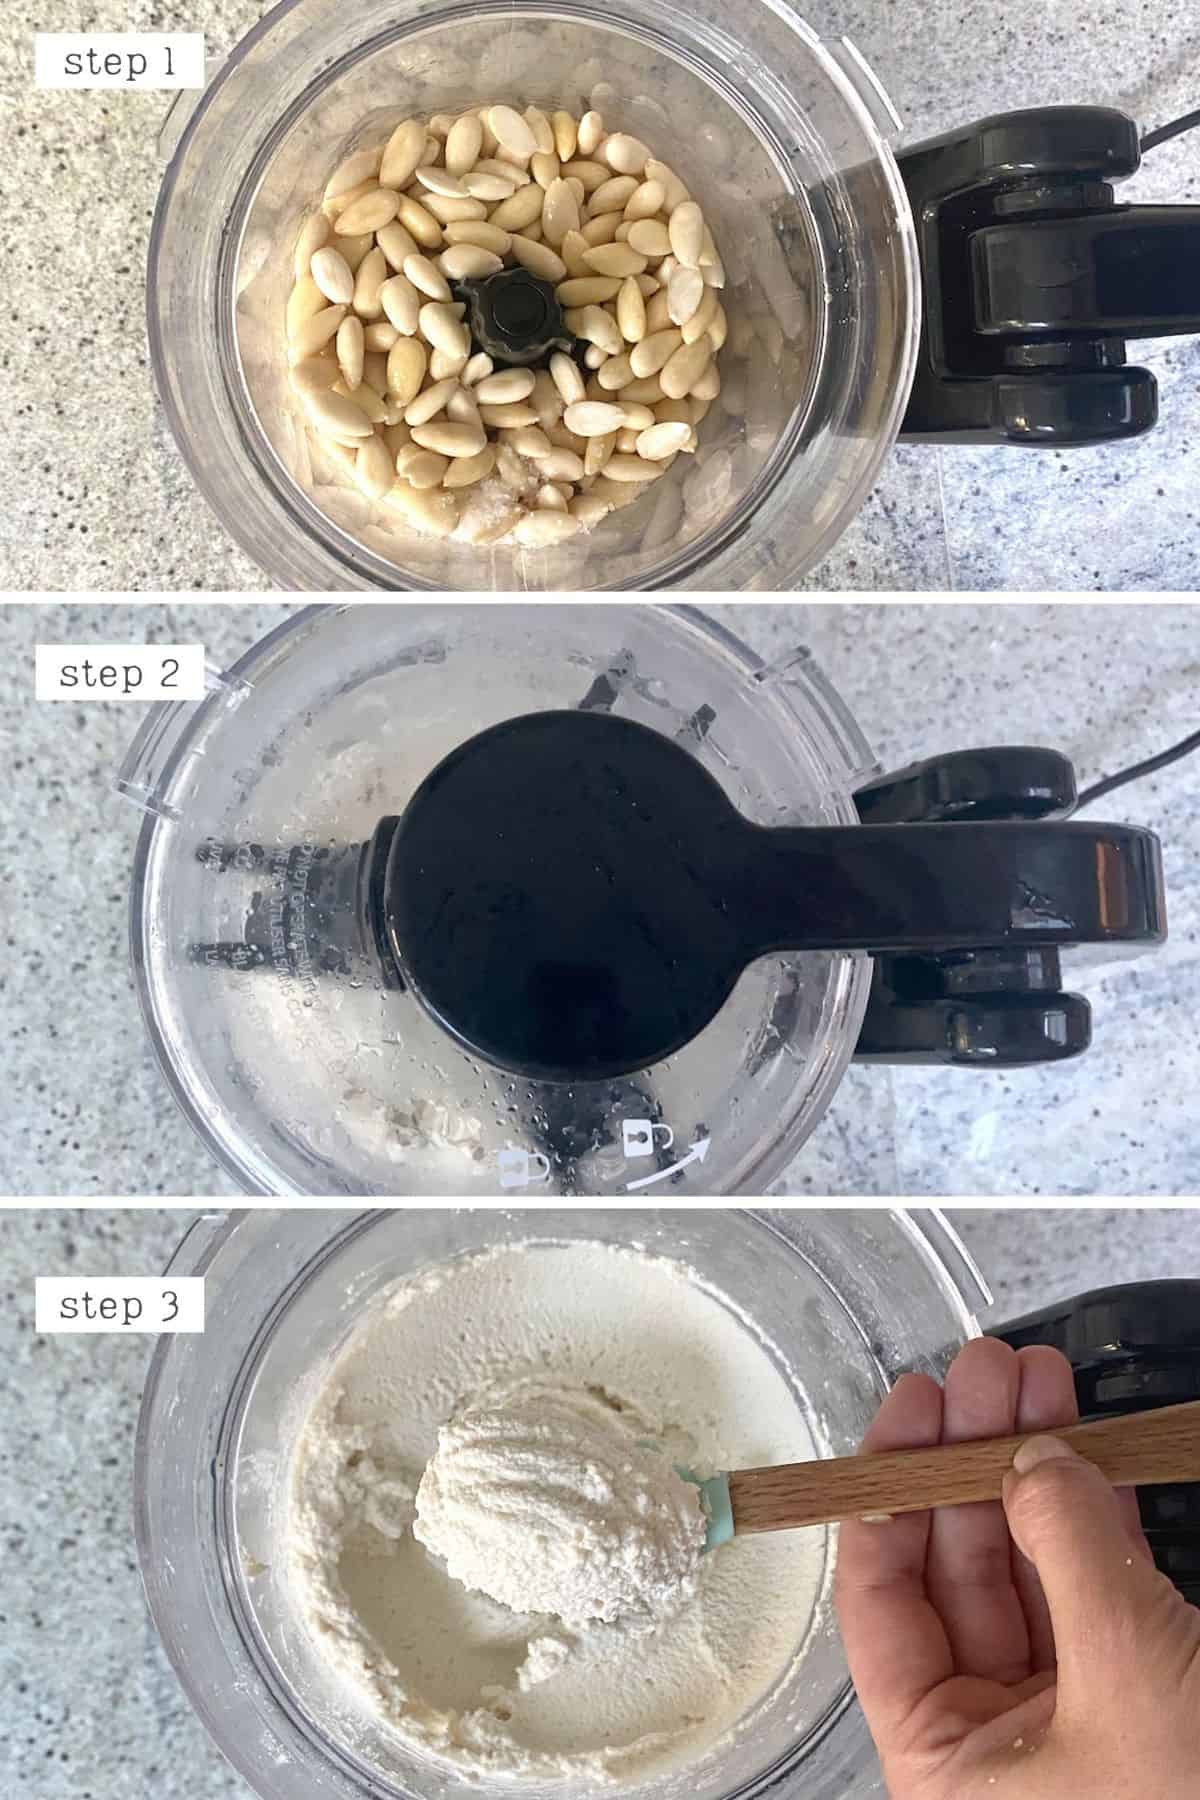 Steps for making vegan ricotta cheese